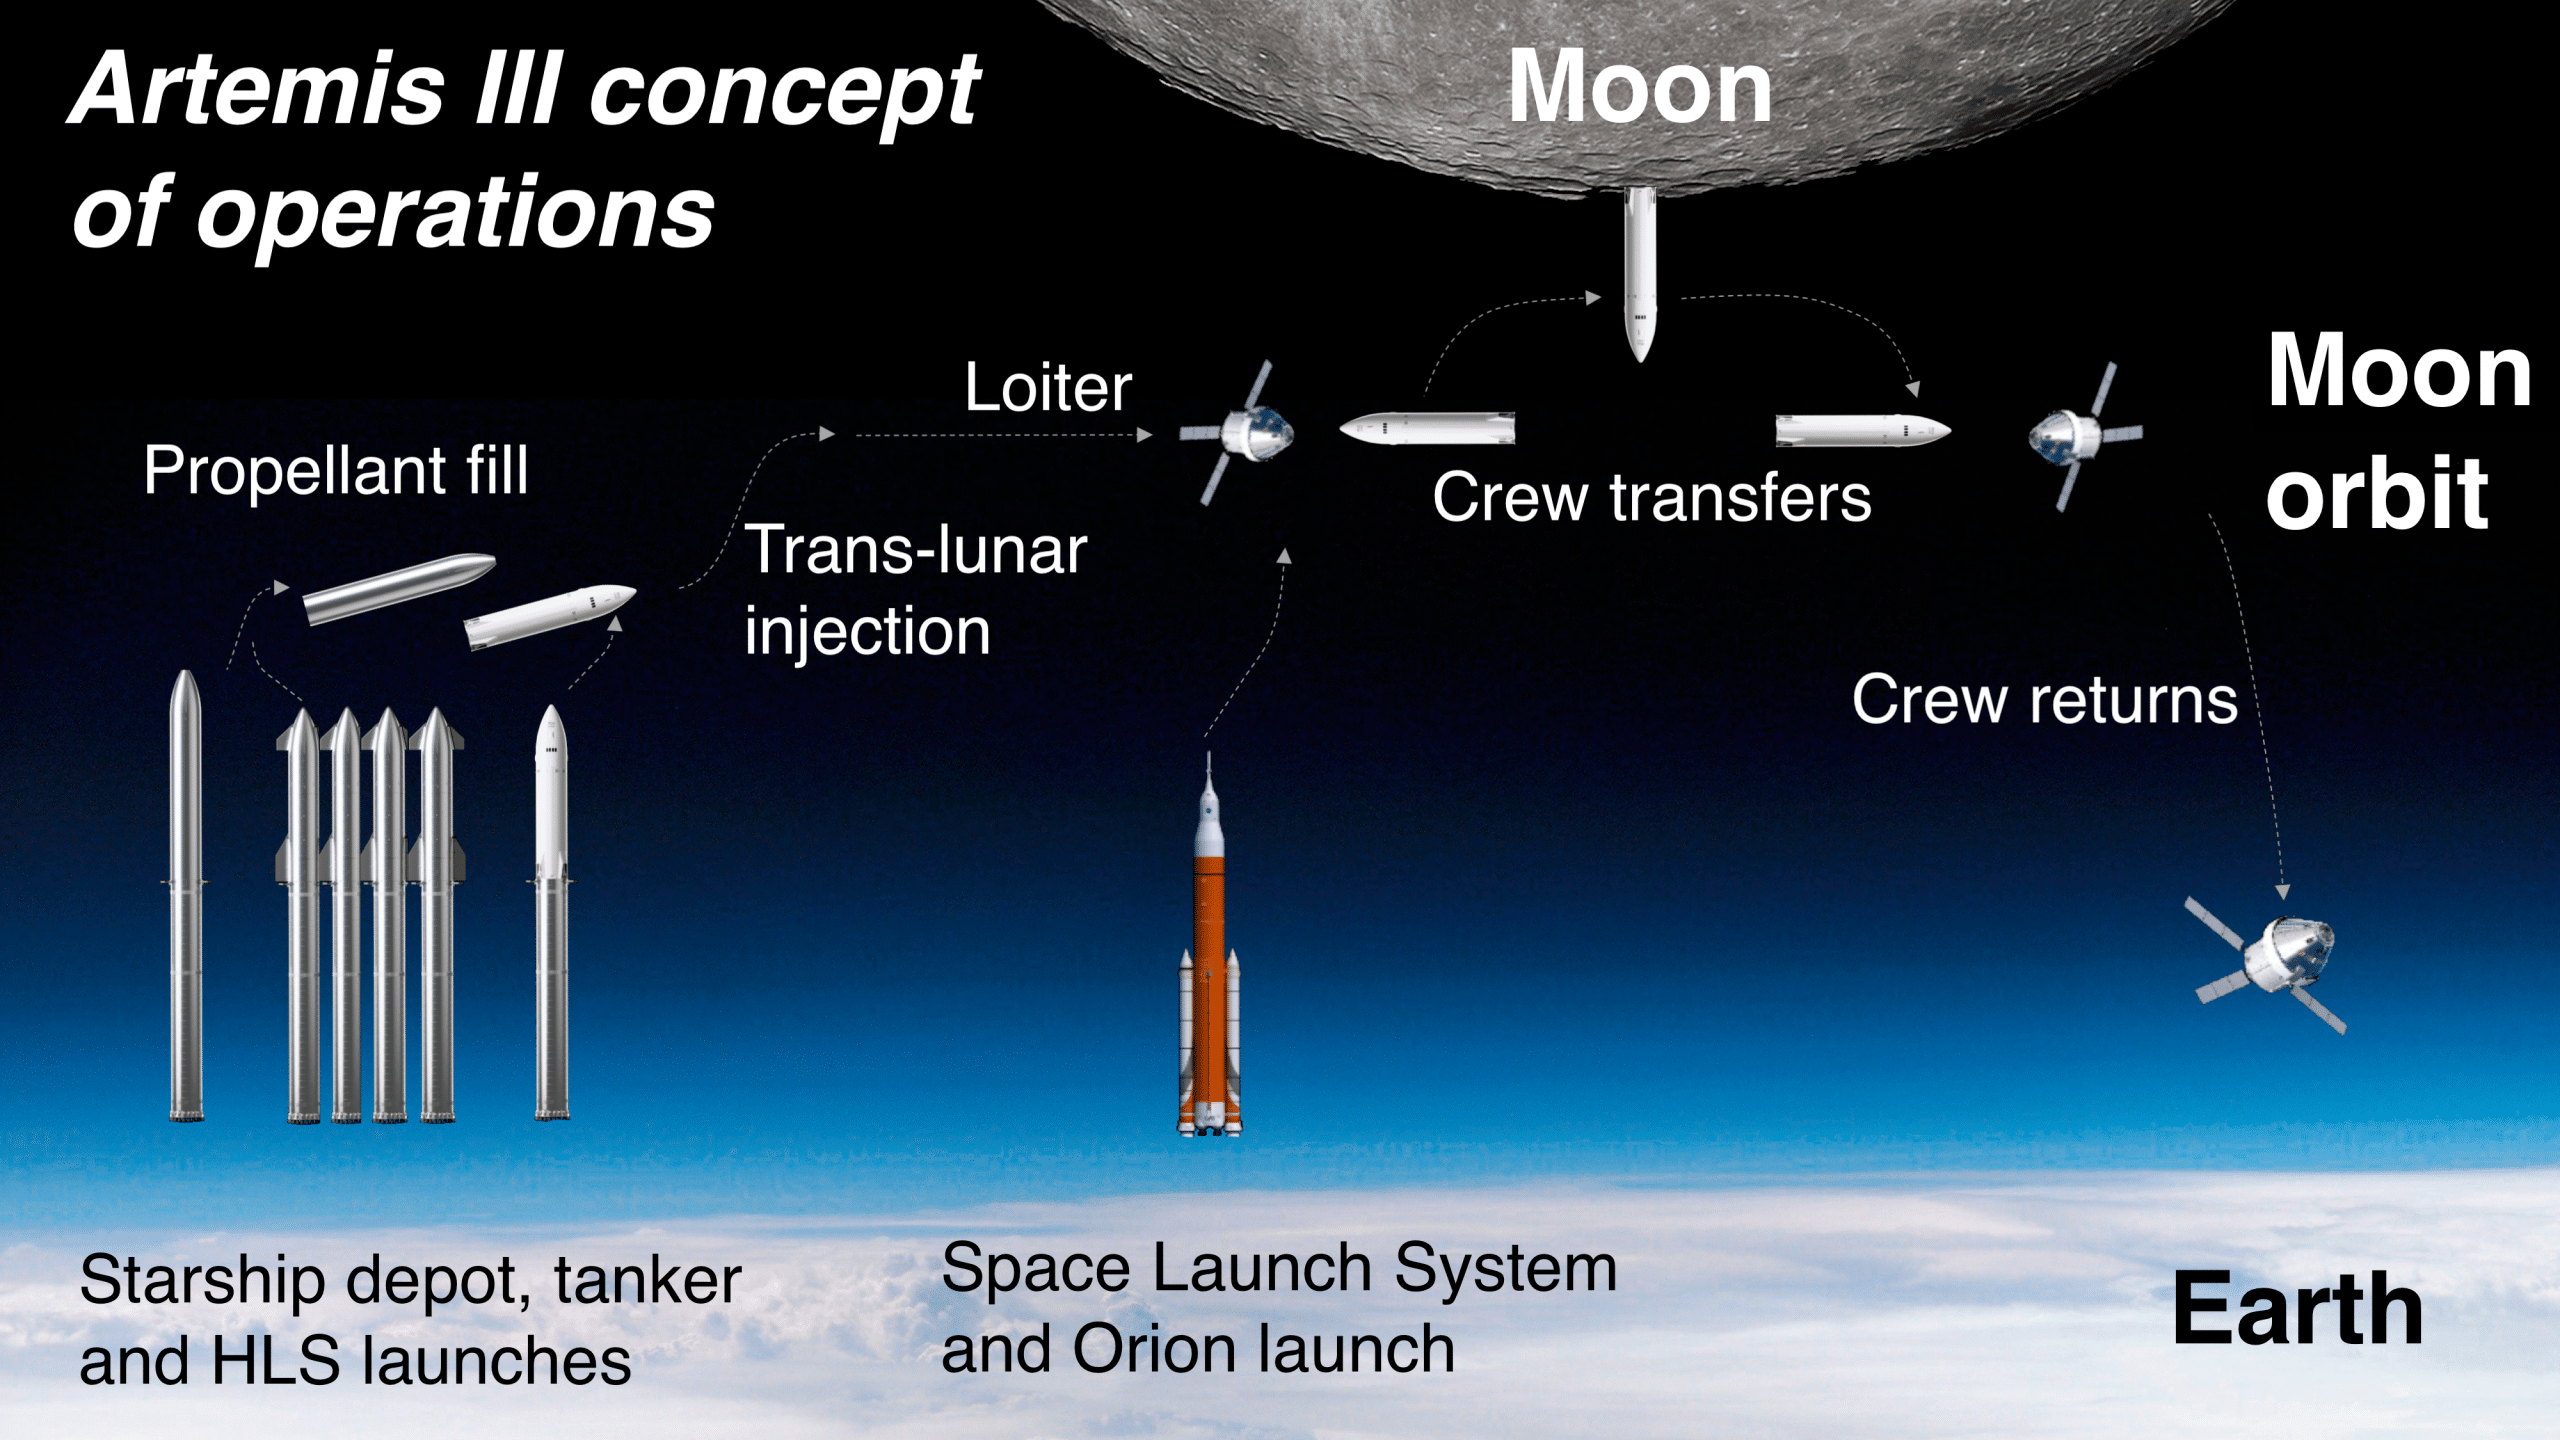 Die Artemis III Mission soll 2025 oder später Menschen auf den Mond schicken. Bildquelle: CactiStaccingCrane, CC BY-SA 4.0 , via Wikimedia Commons